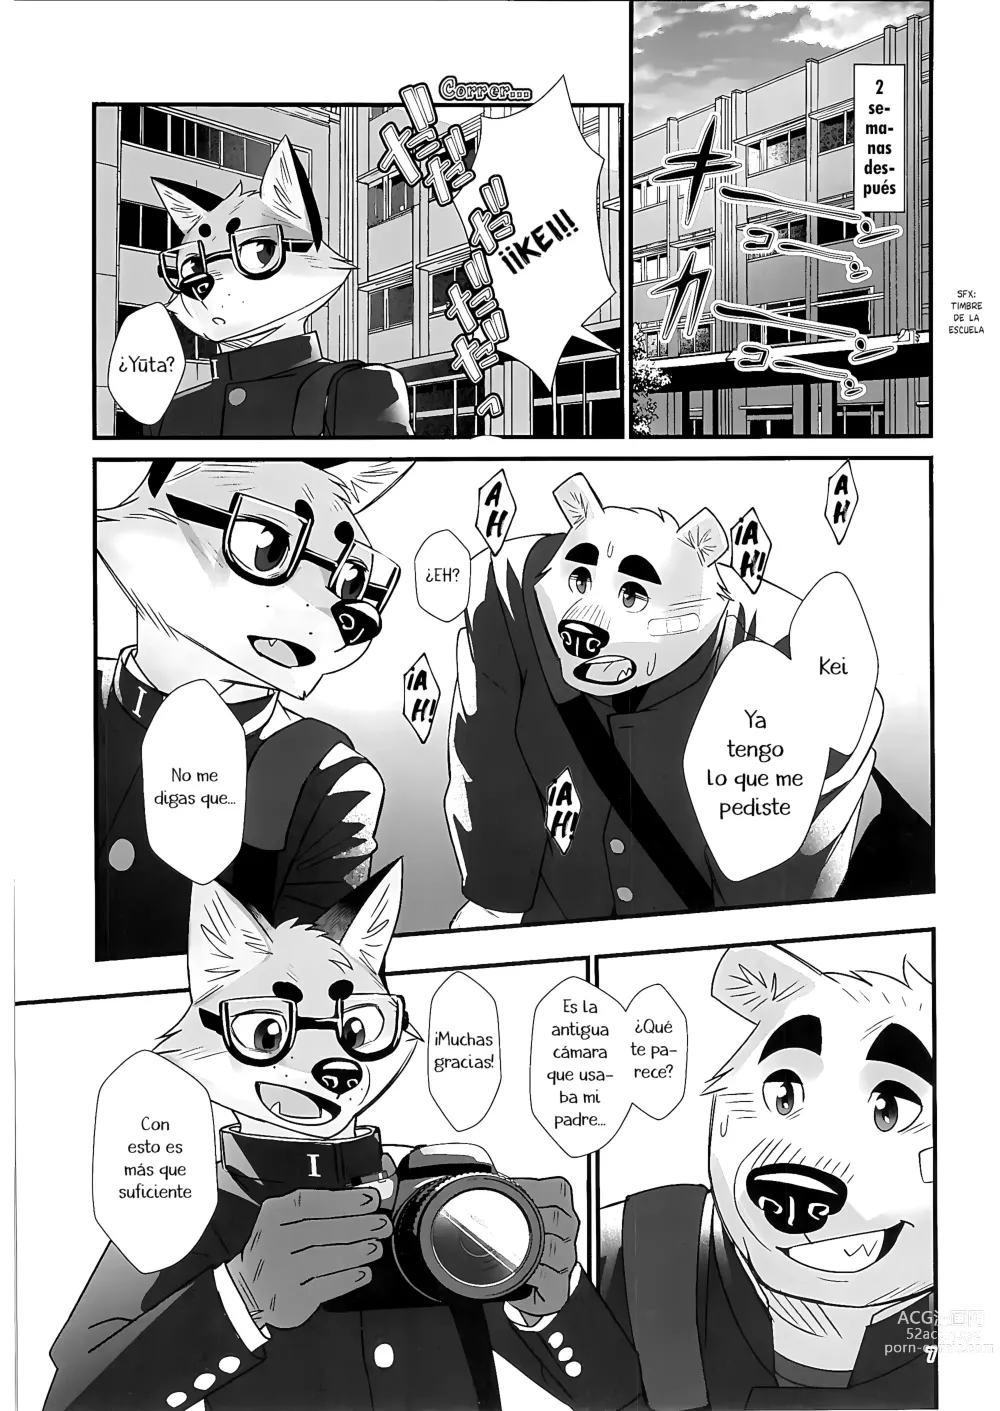 Page 6 of doujinshi Entrenamiento Mental